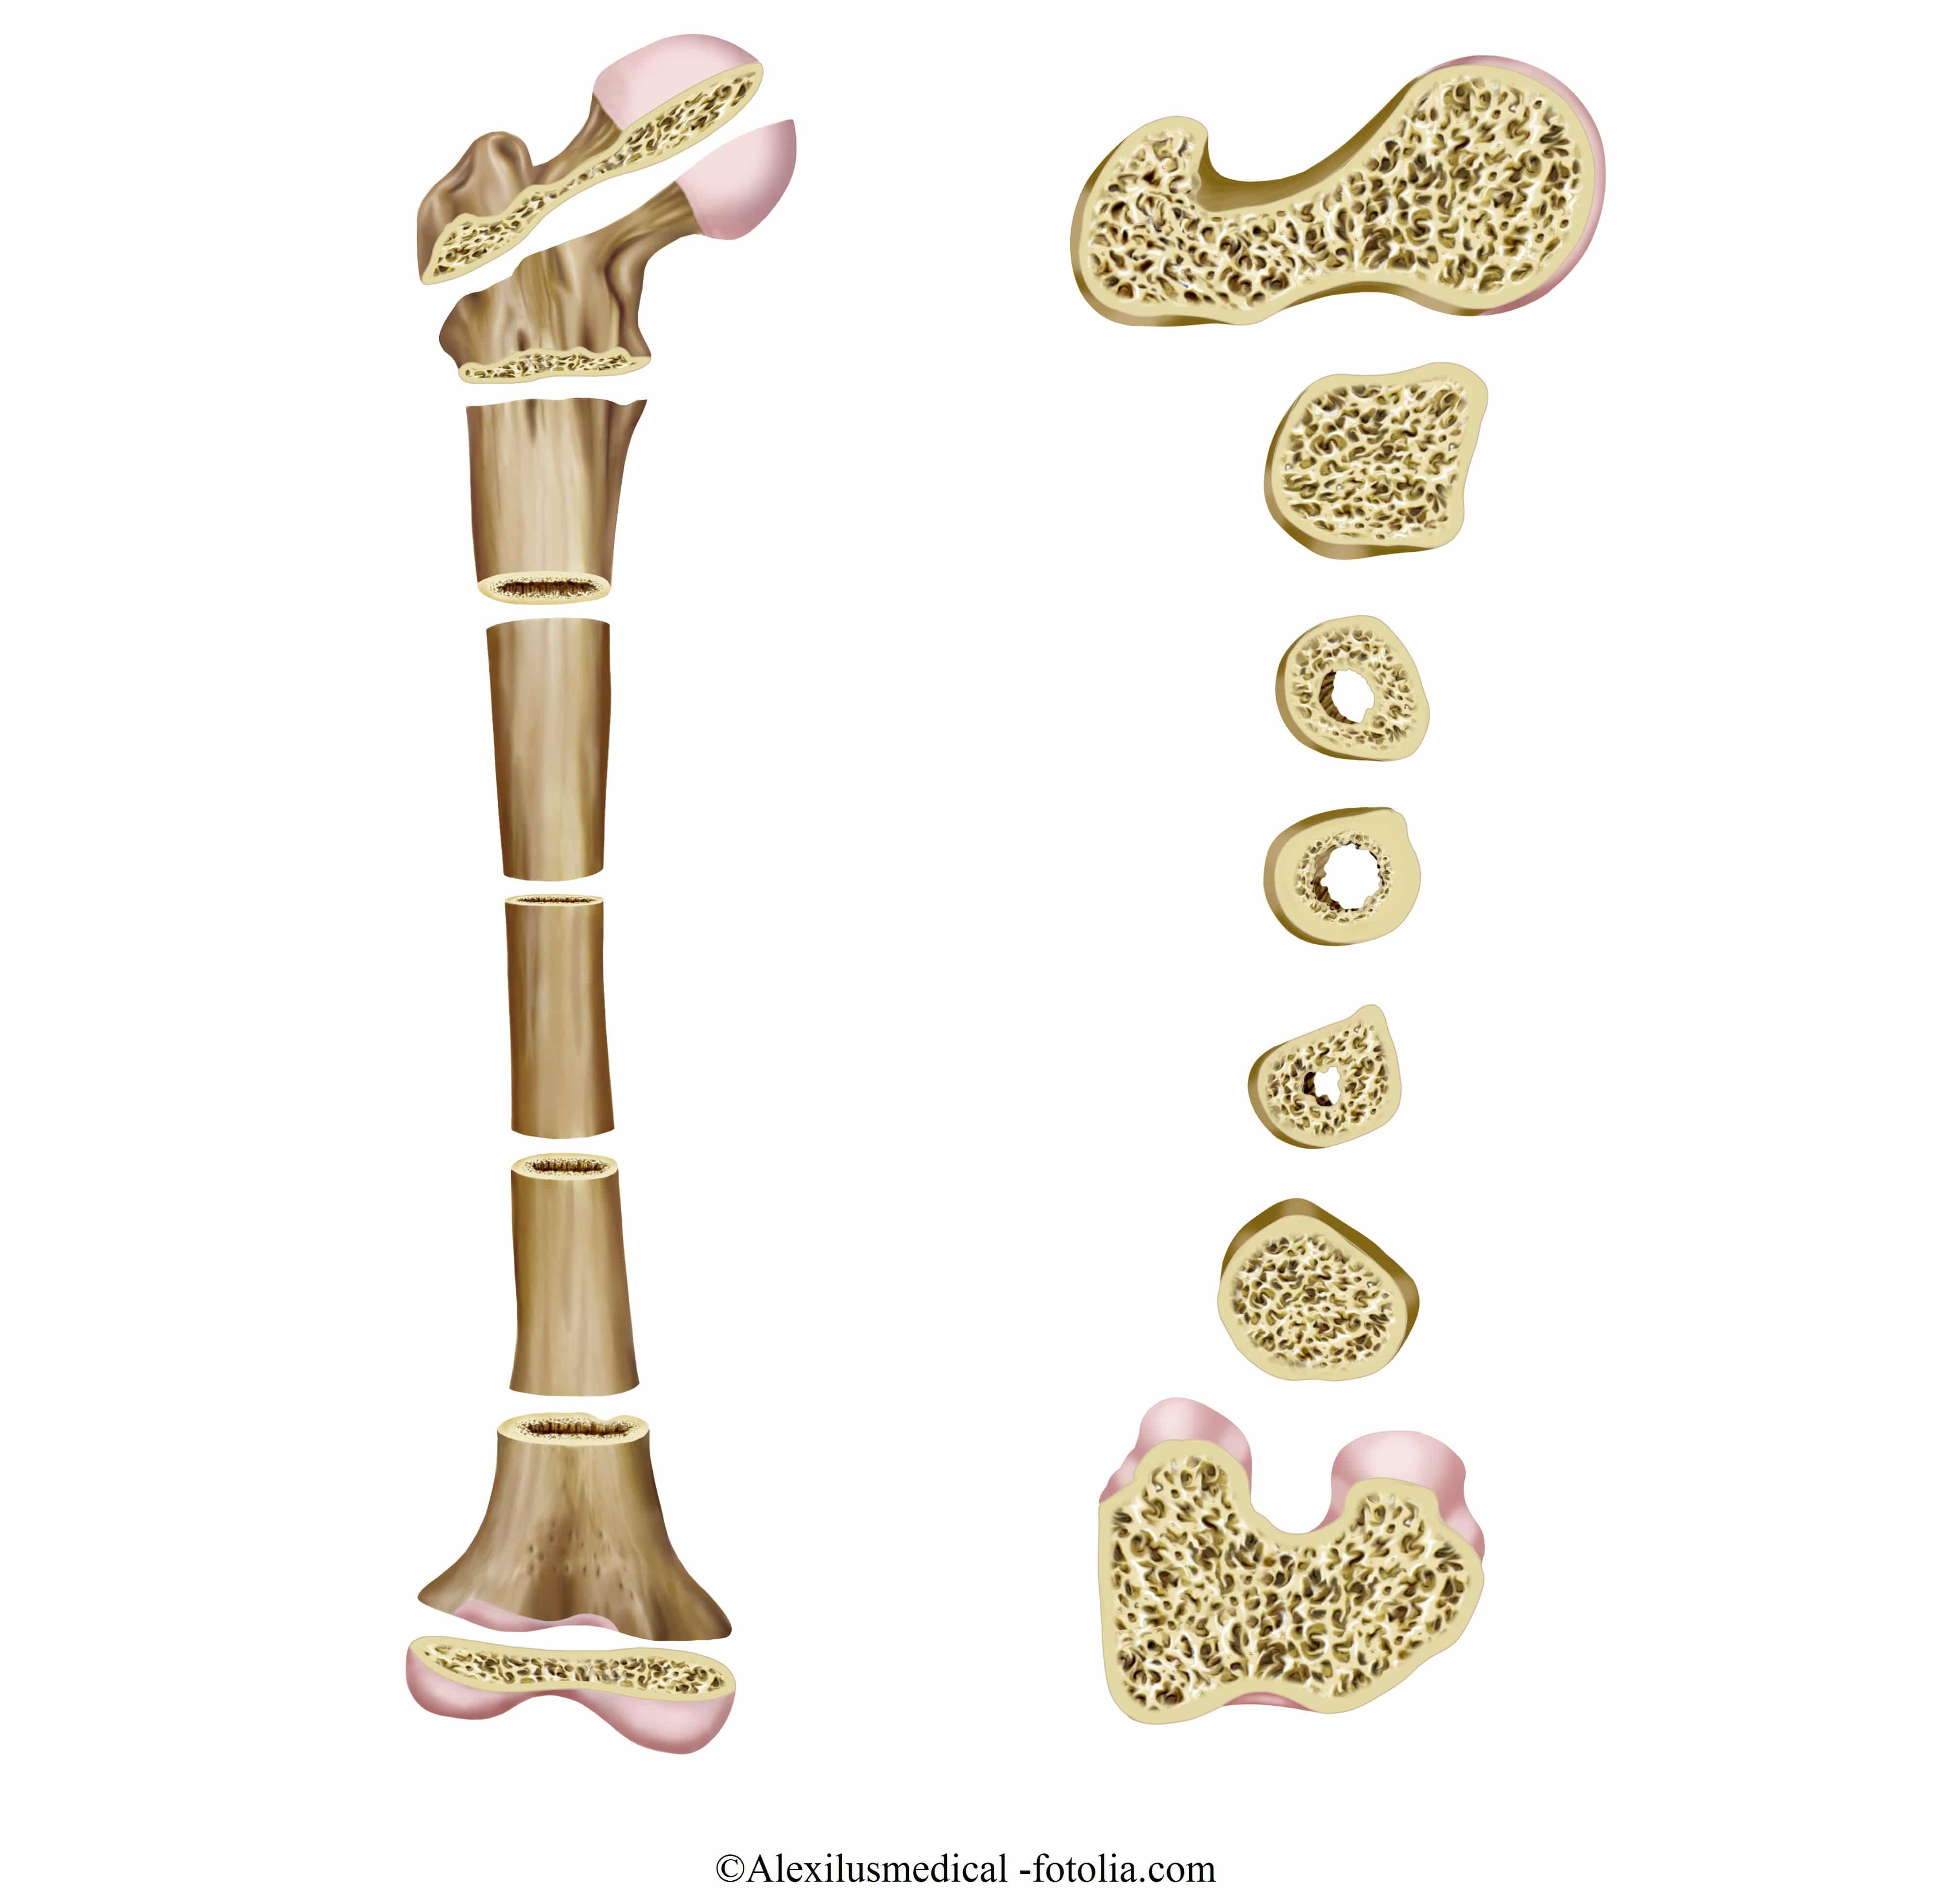 Symptome bei Osteoporose